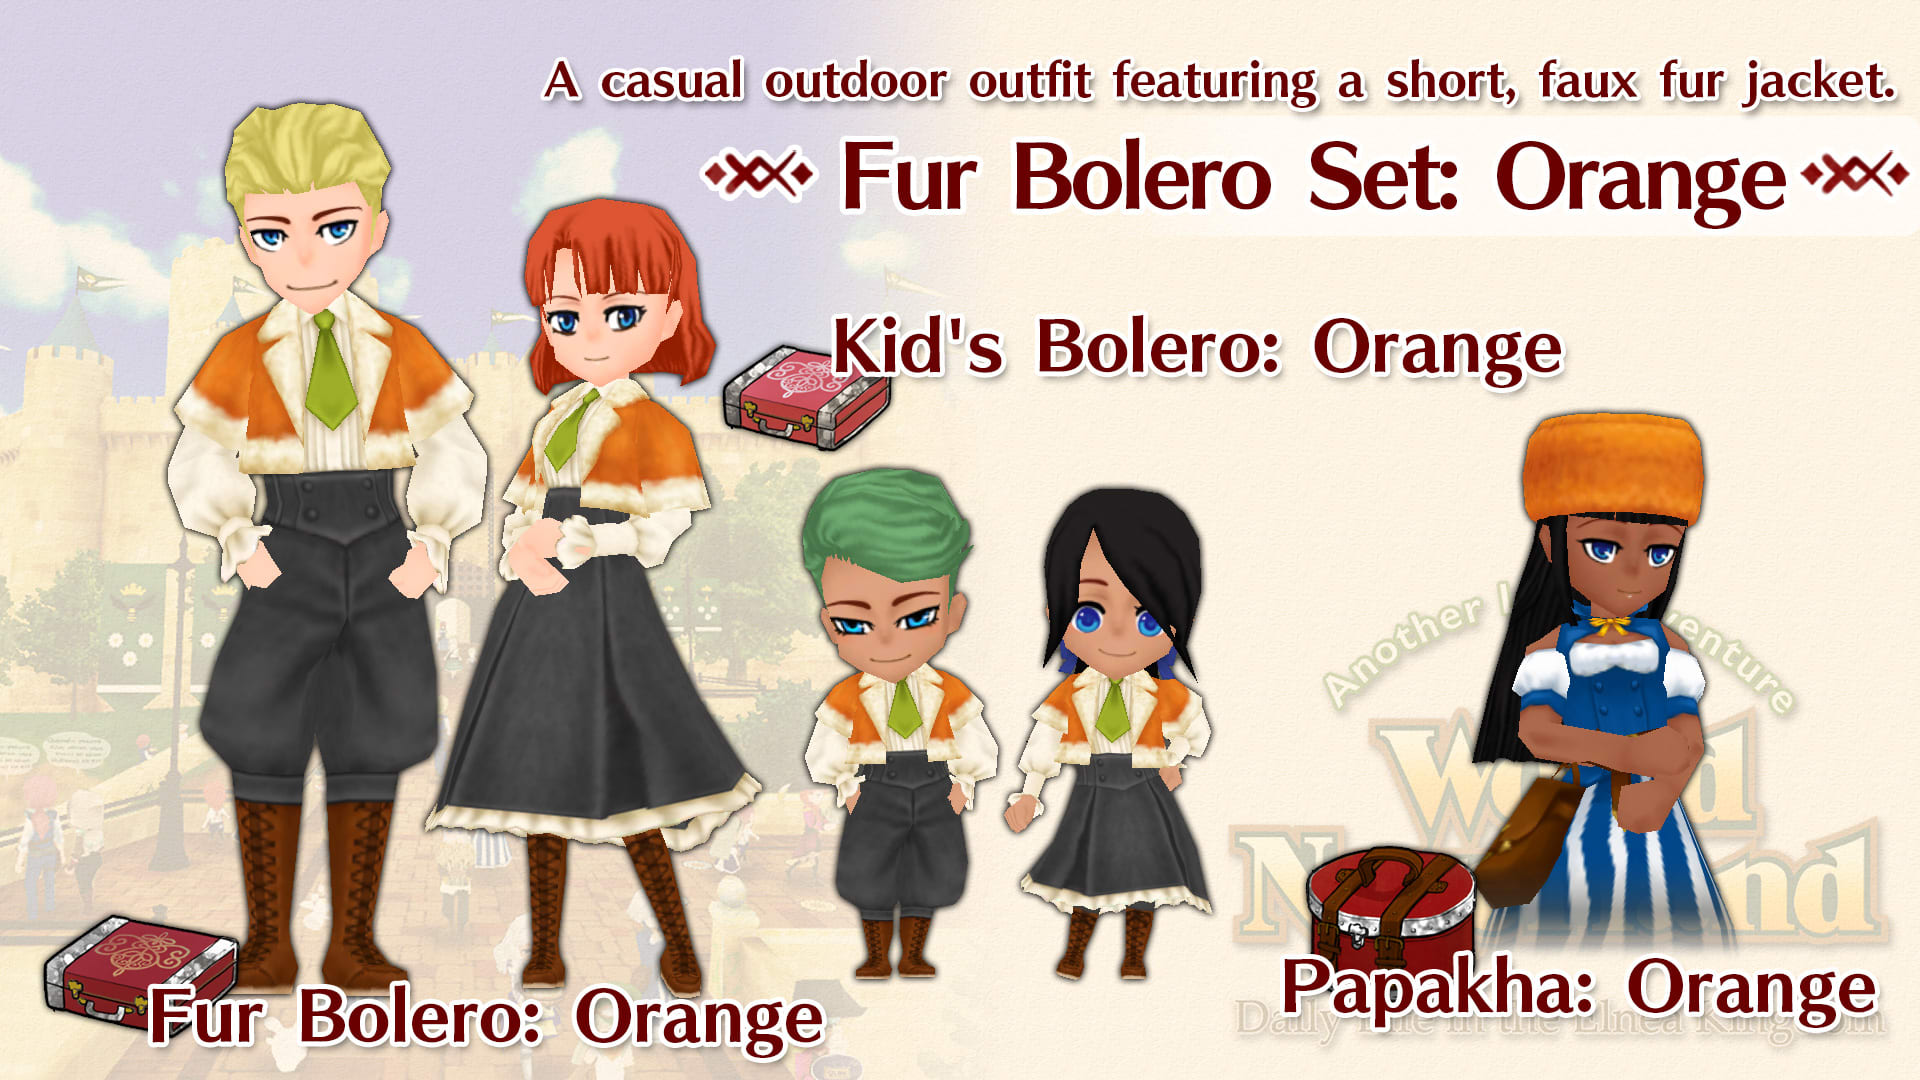 Fur Bolero Set: Orange